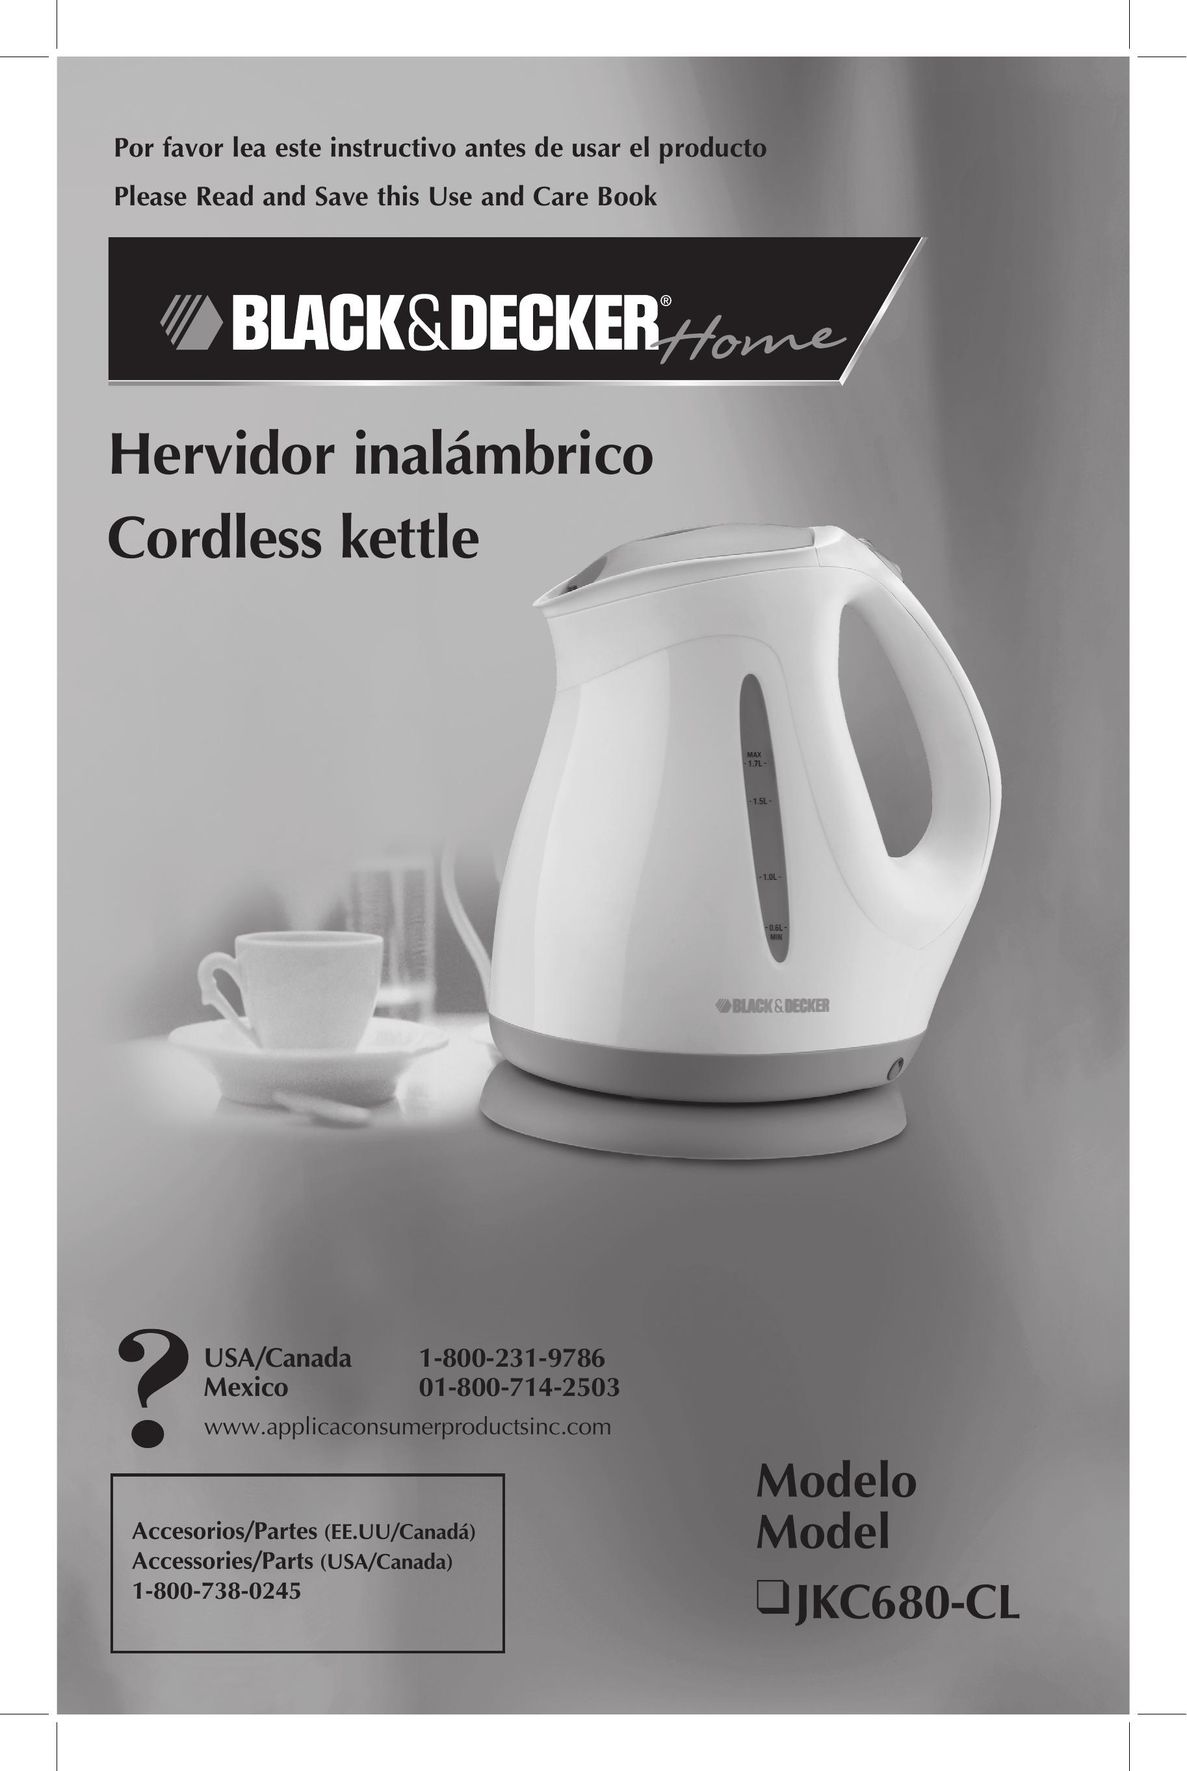 Black & Decker JKC680-CL Hot Beverage Maker User Manual